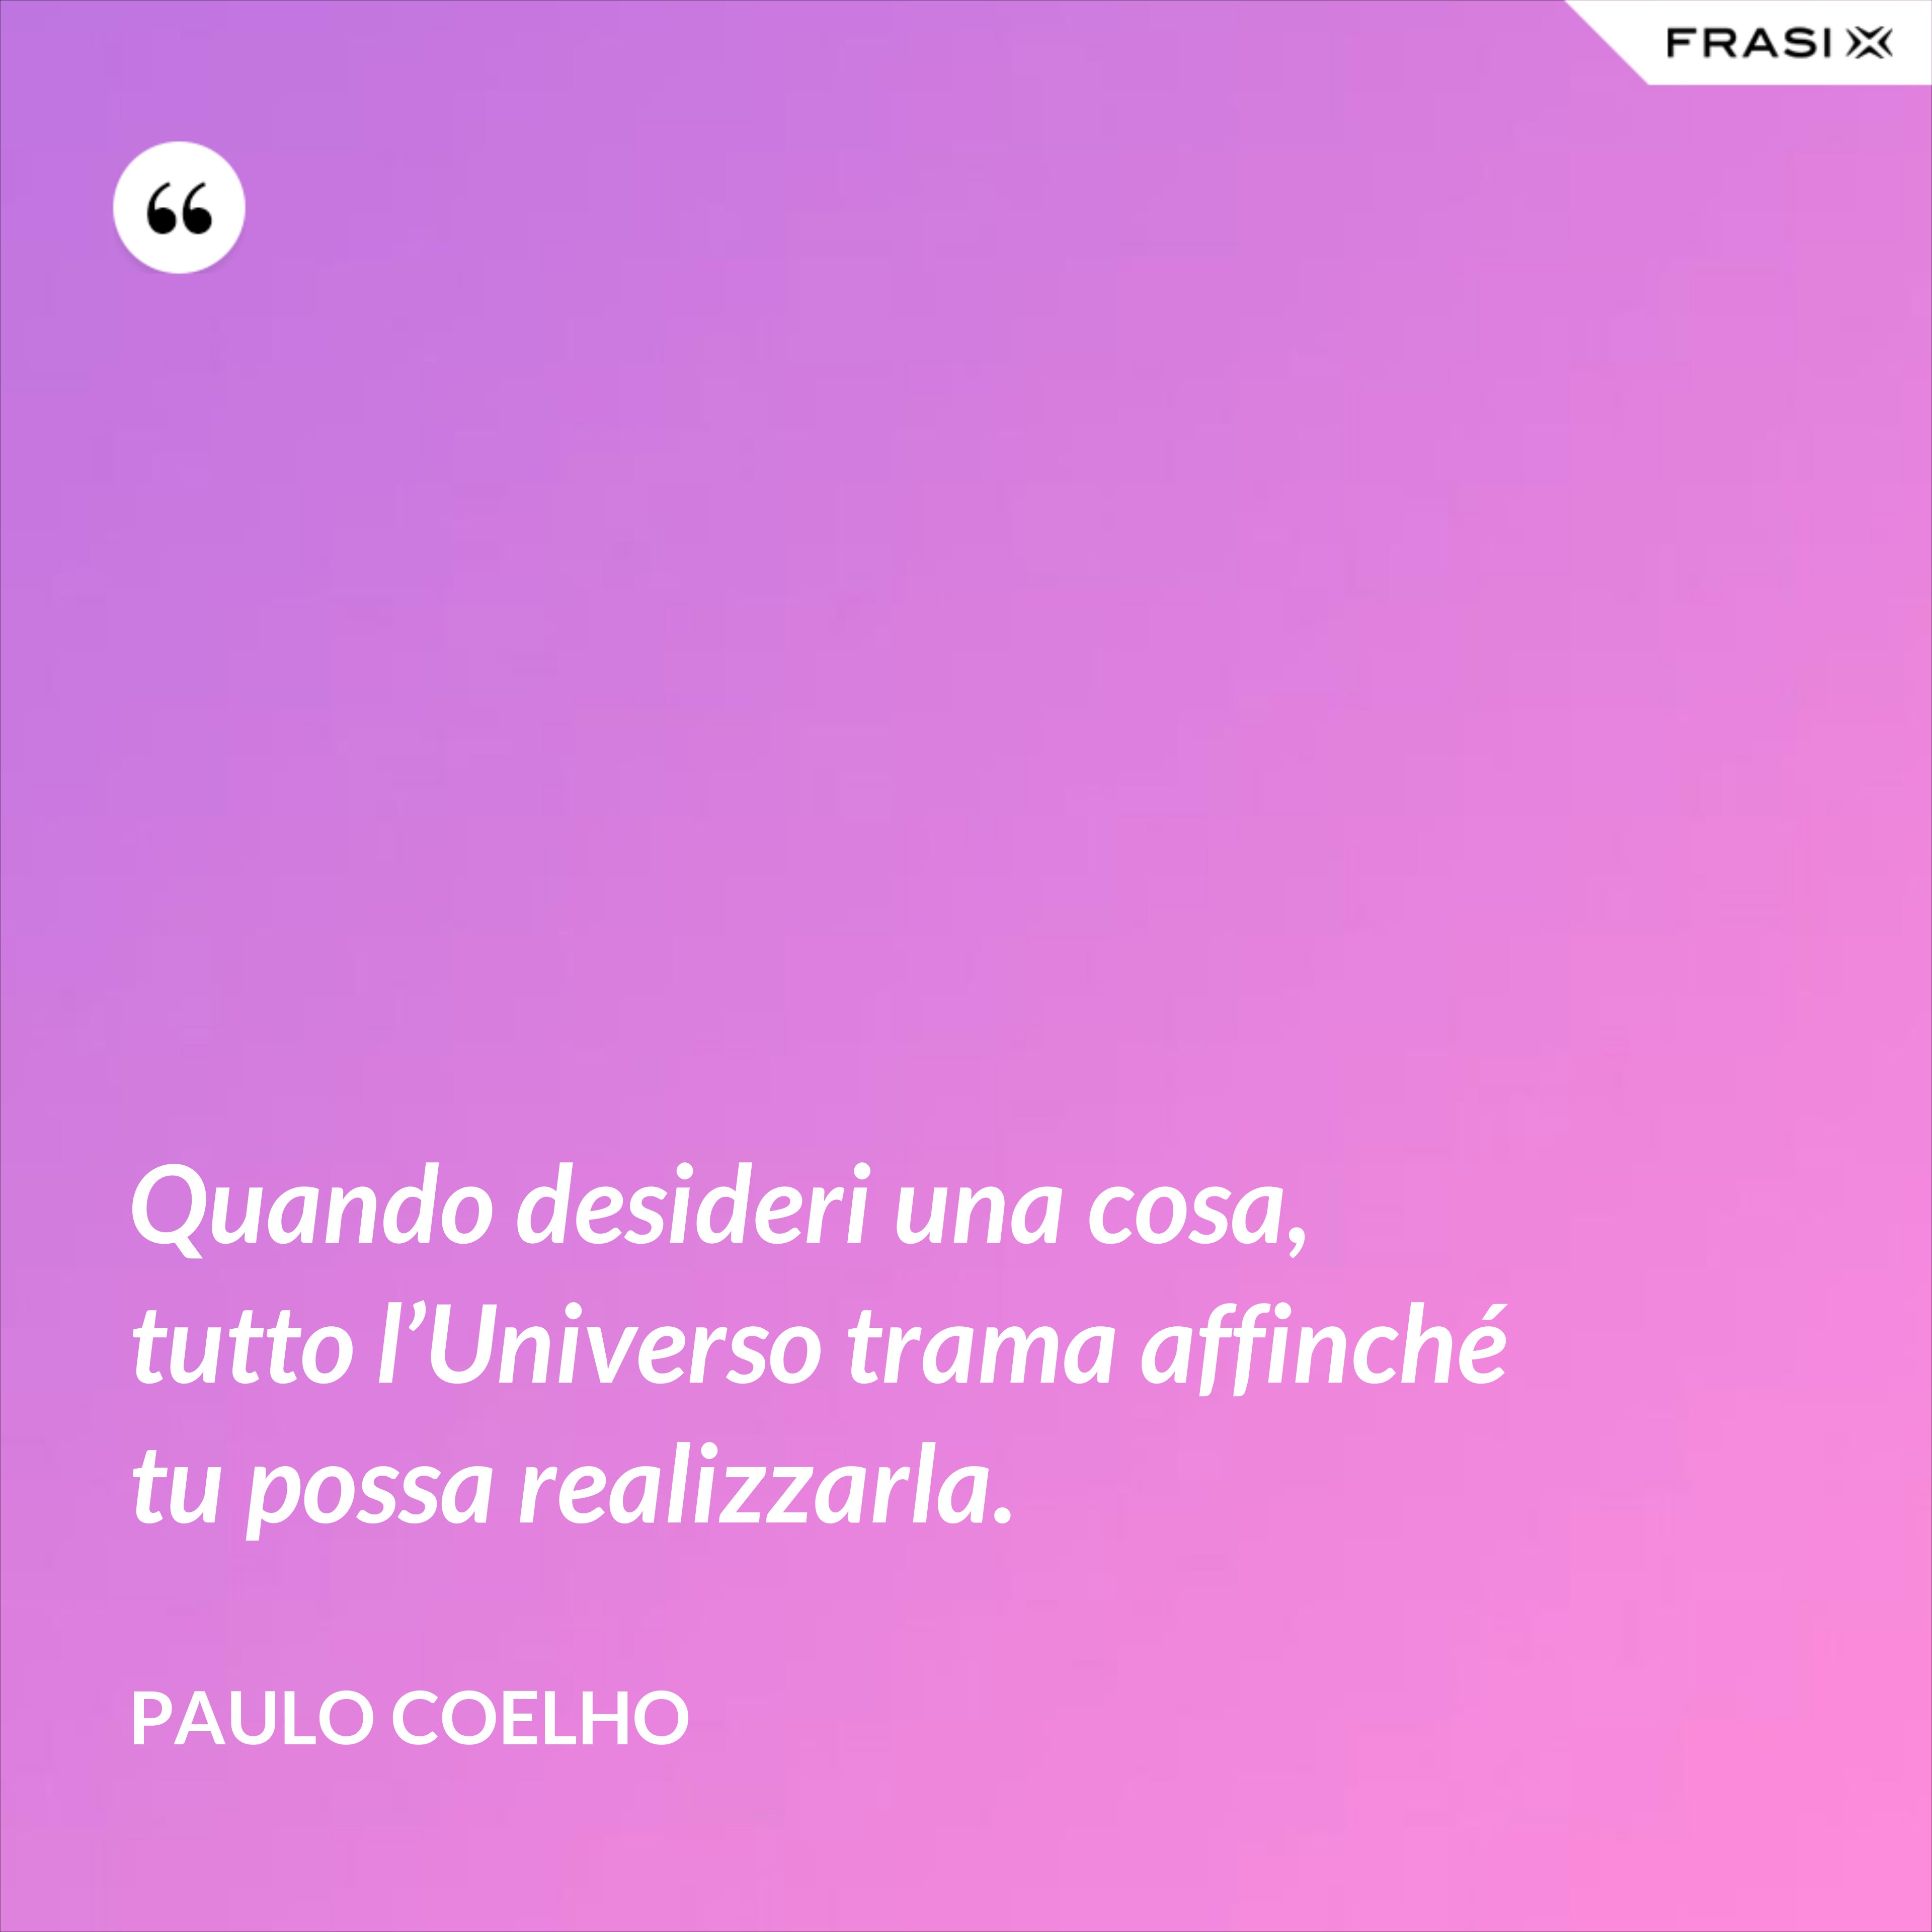 Quando desideri una cosa, tutto l’Universo trama affinché tu possa realizzarla. - Paulo Coelho